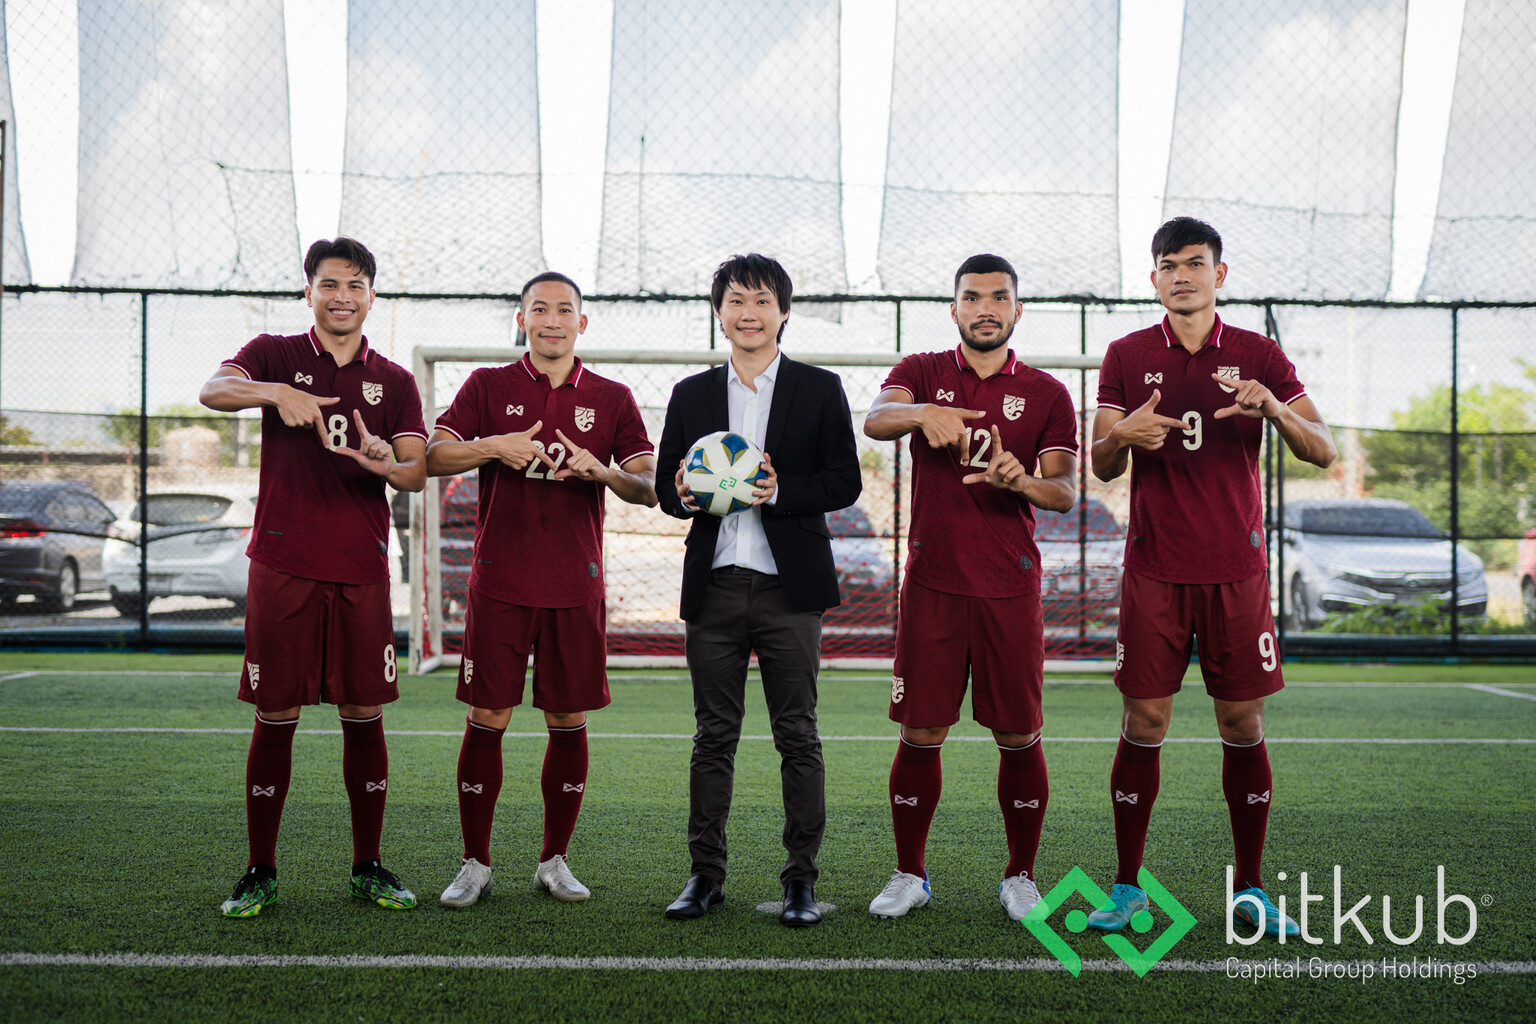 'ท๊อป จิรายุส' แห่ง Bitkub Capital Group ร่วมส่งกำลังใจแก่ฟุตบอลทีมชาติไทยผ่านหนังโฆษณา ภายใต้แนวคิด Believe & Beyond เชื่อมั่นมุ่งไปให้ไกลกว่า